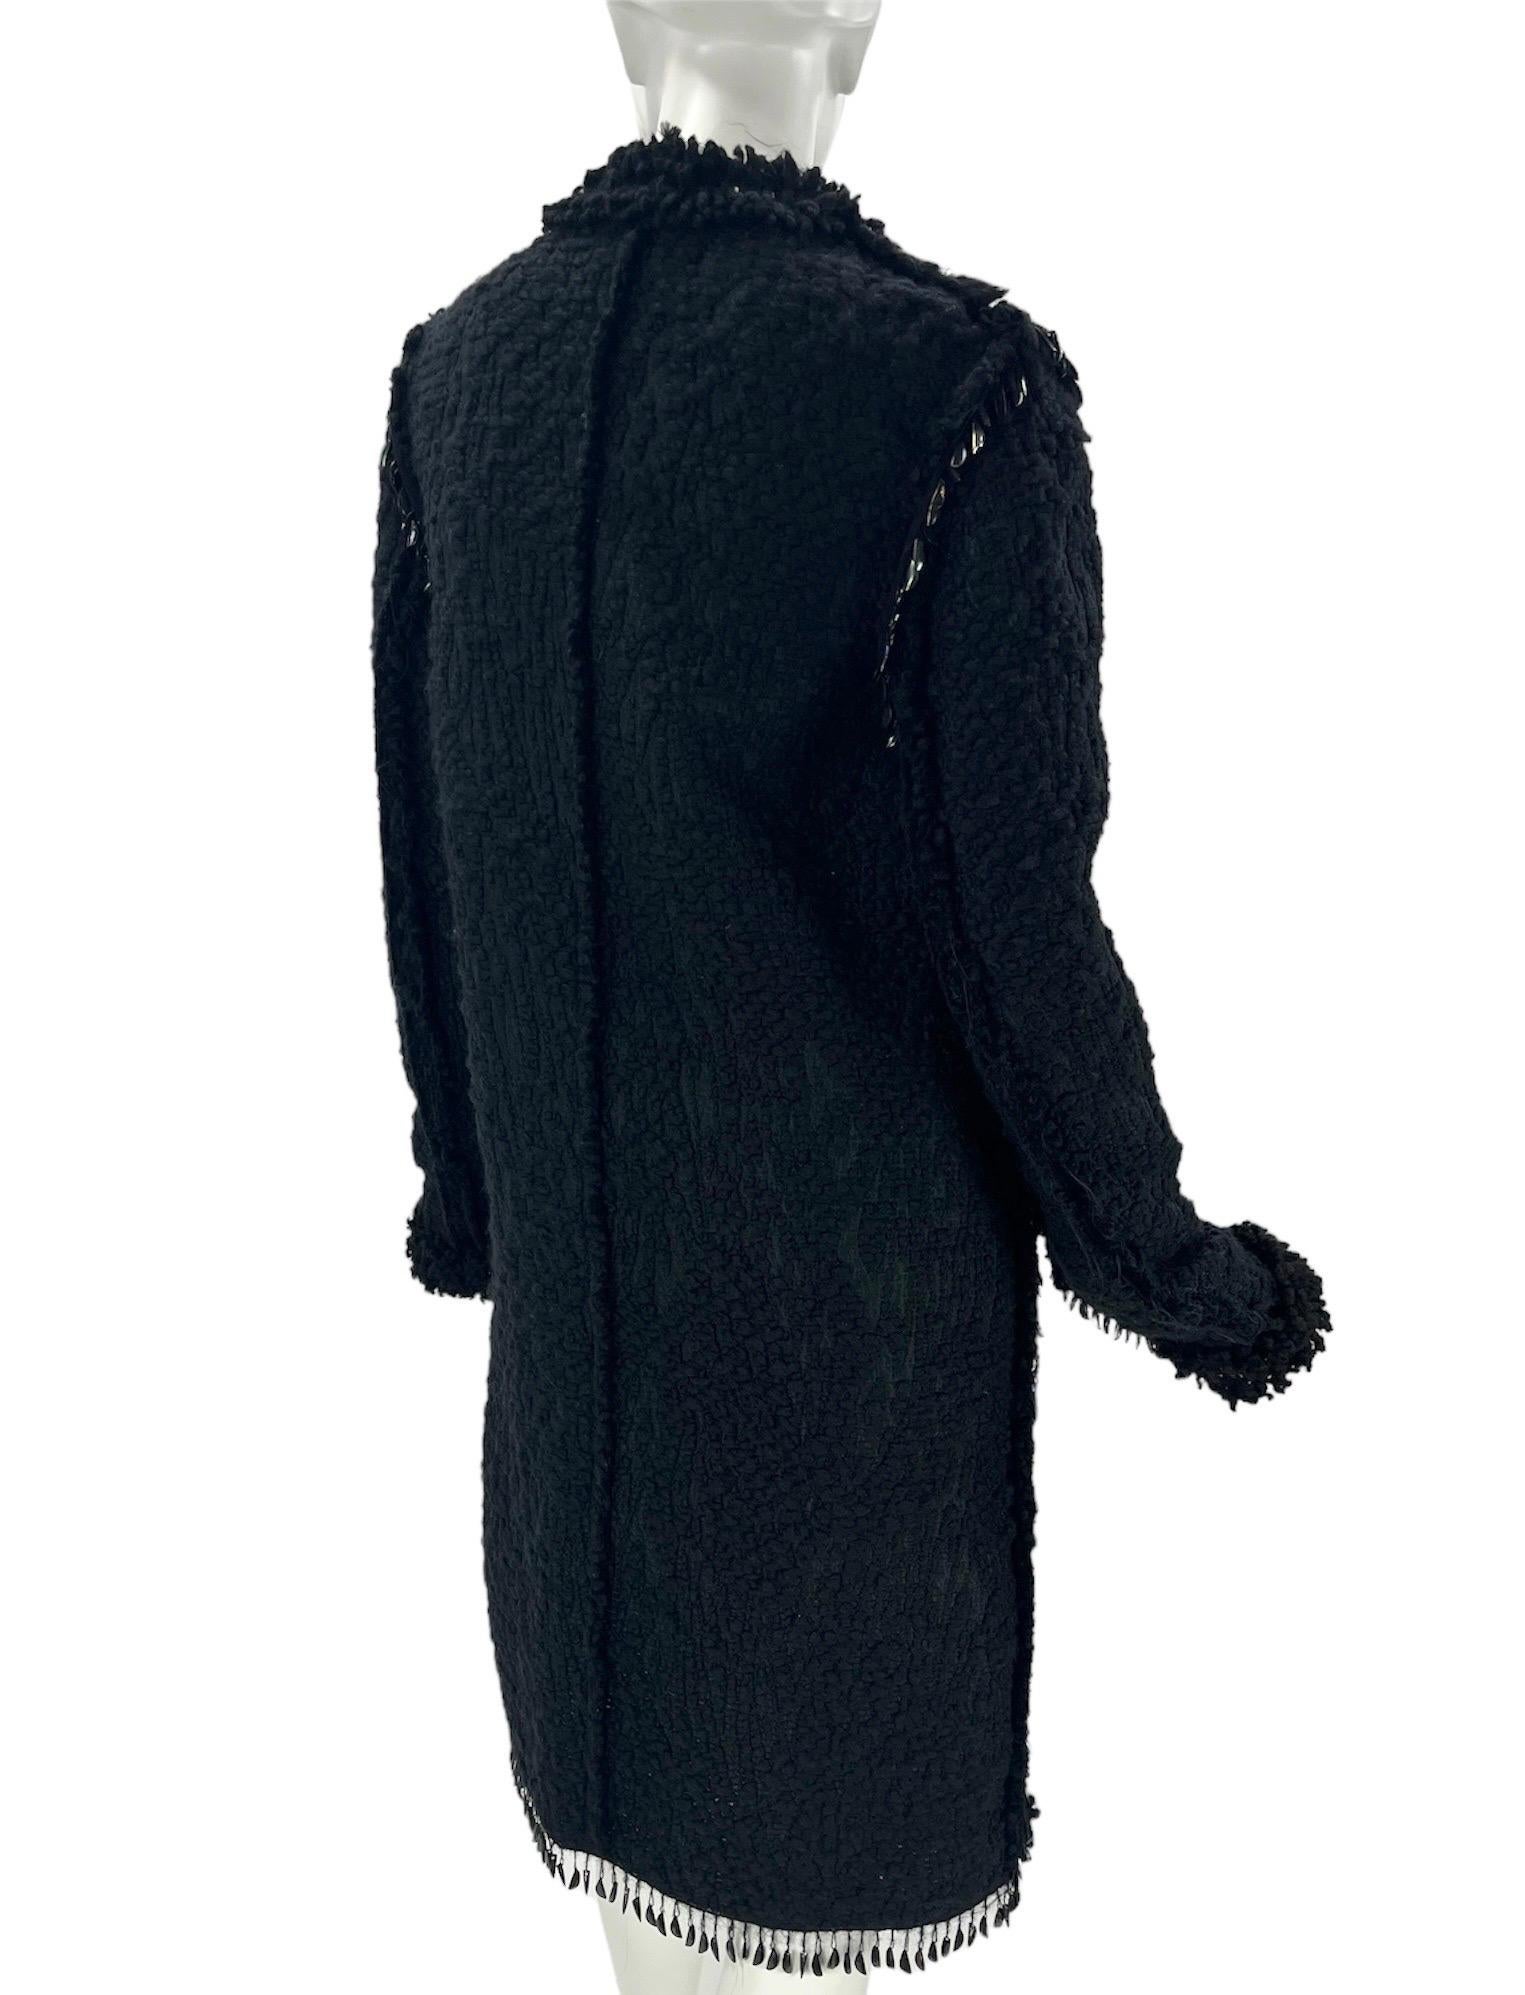 F/W 2010 Vintage Lanvin black embellished boucle tweed coat 40 - 8 NWT For Sale 2